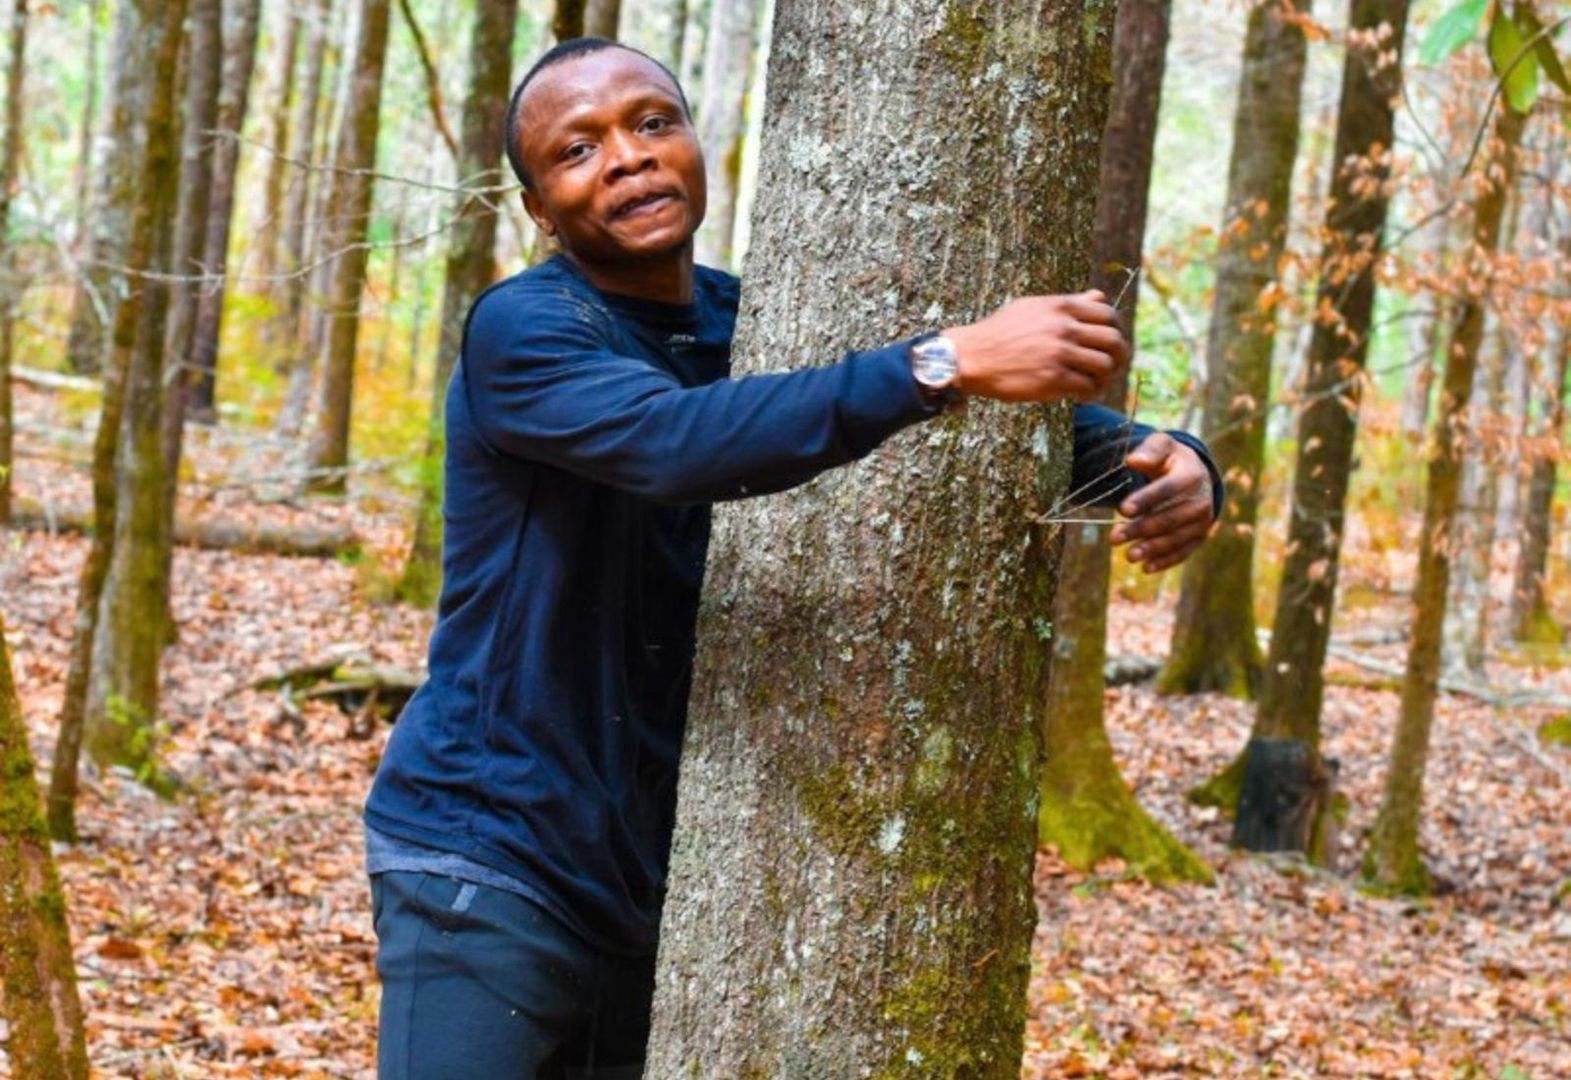 Student z Ghany ustanowił rekord świata w przytulaniu drzew